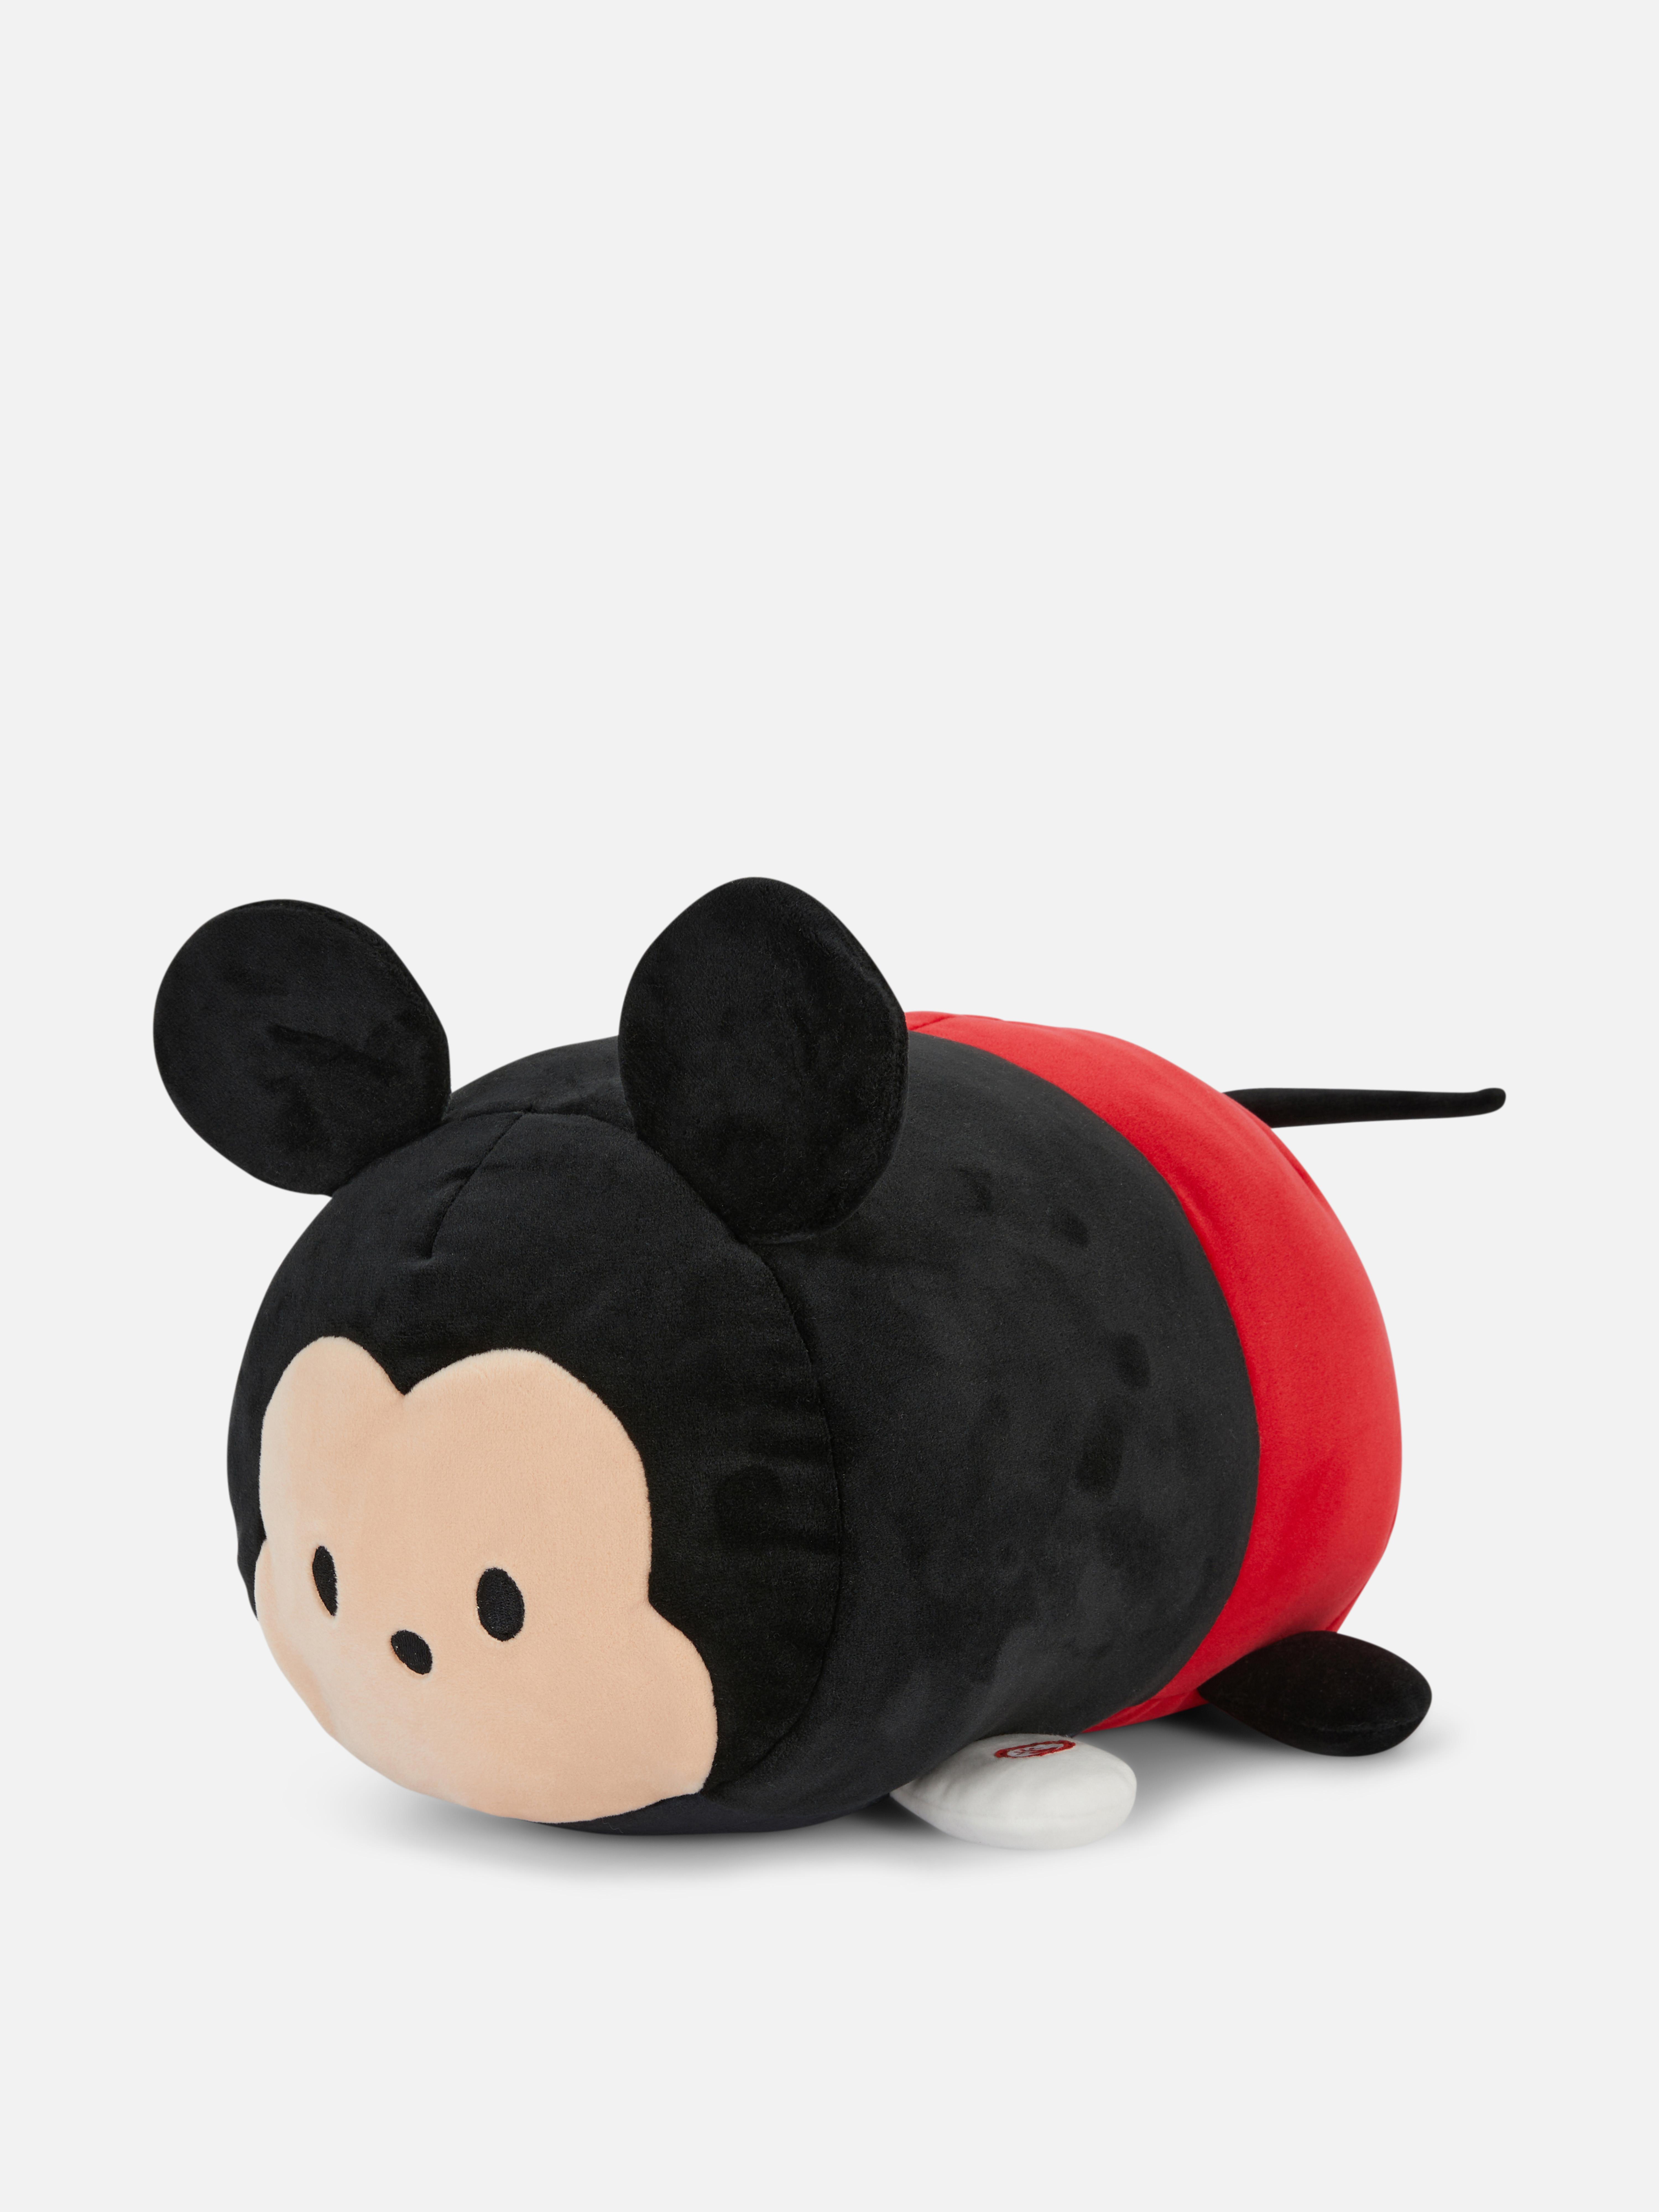 Disney Tsum Tsum Mickey Mouse Plush Toy